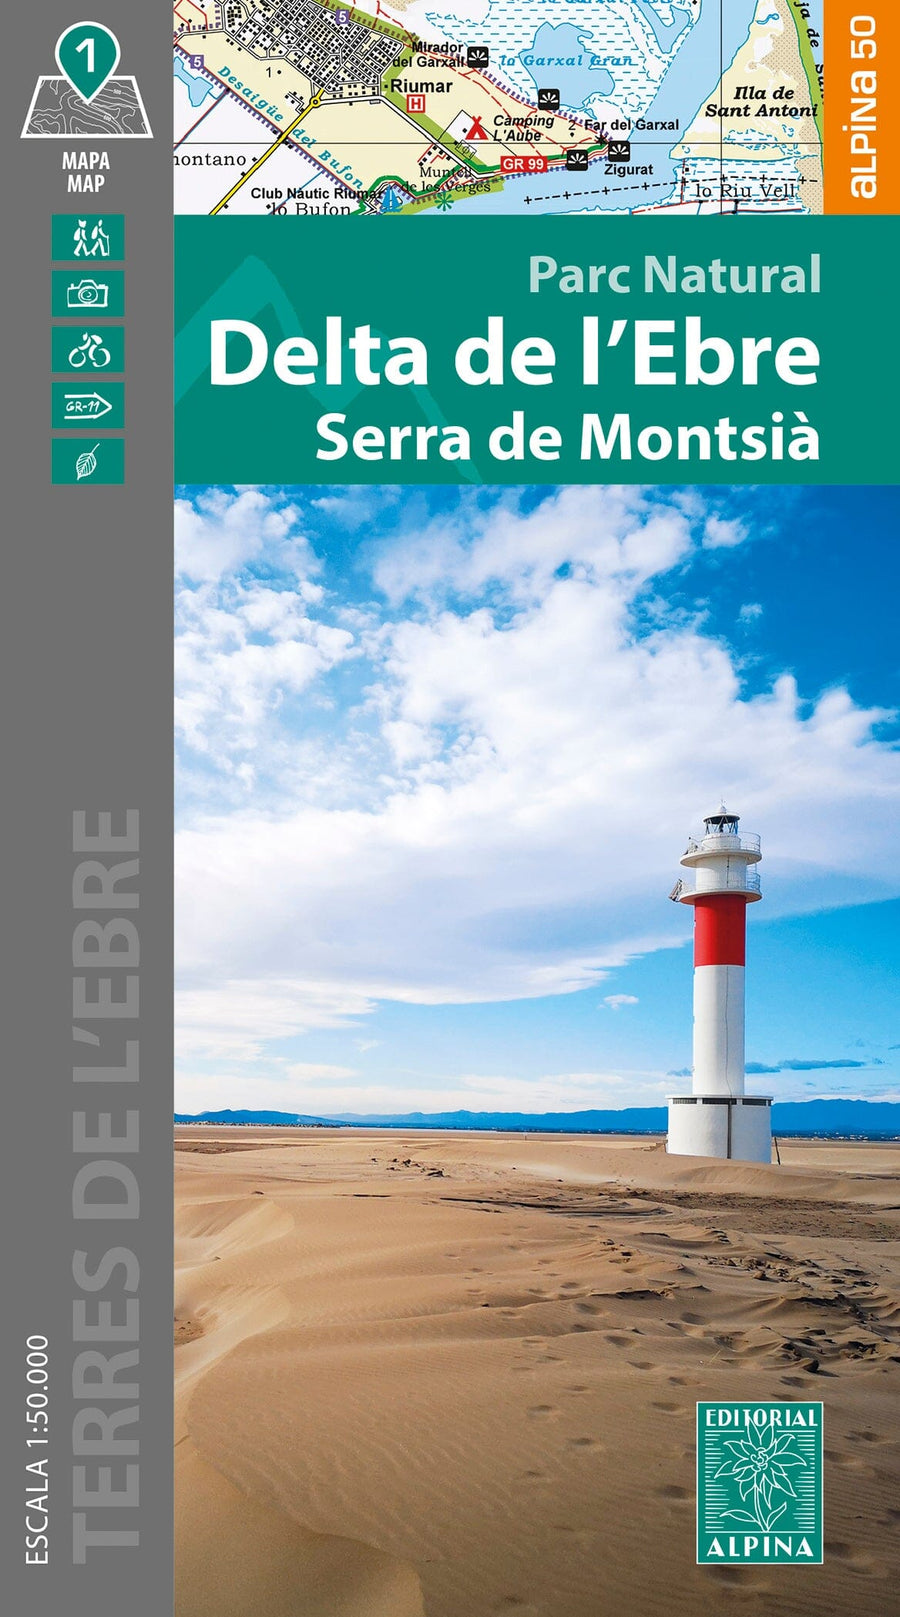 Carte de randonnée - Delta de l’Ebre & Serra de Montsià | Alpina carte pliée Editorial Alpina 